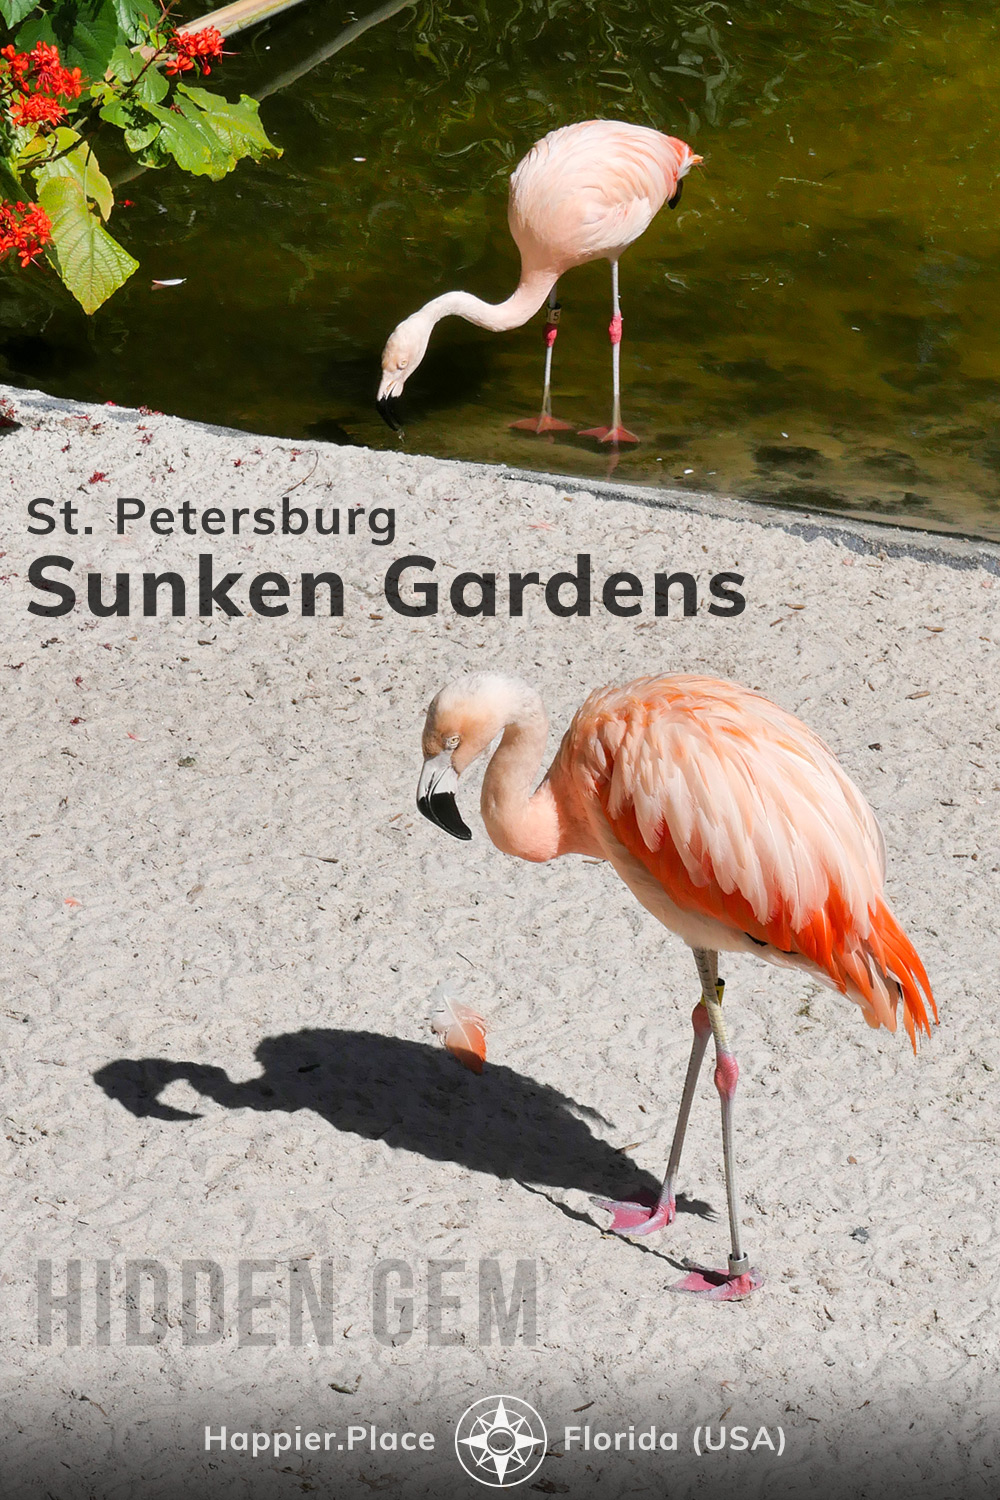 flamingos in St. Petersburg Sunken Gardens, hidden gem in Florida, HappierPlace